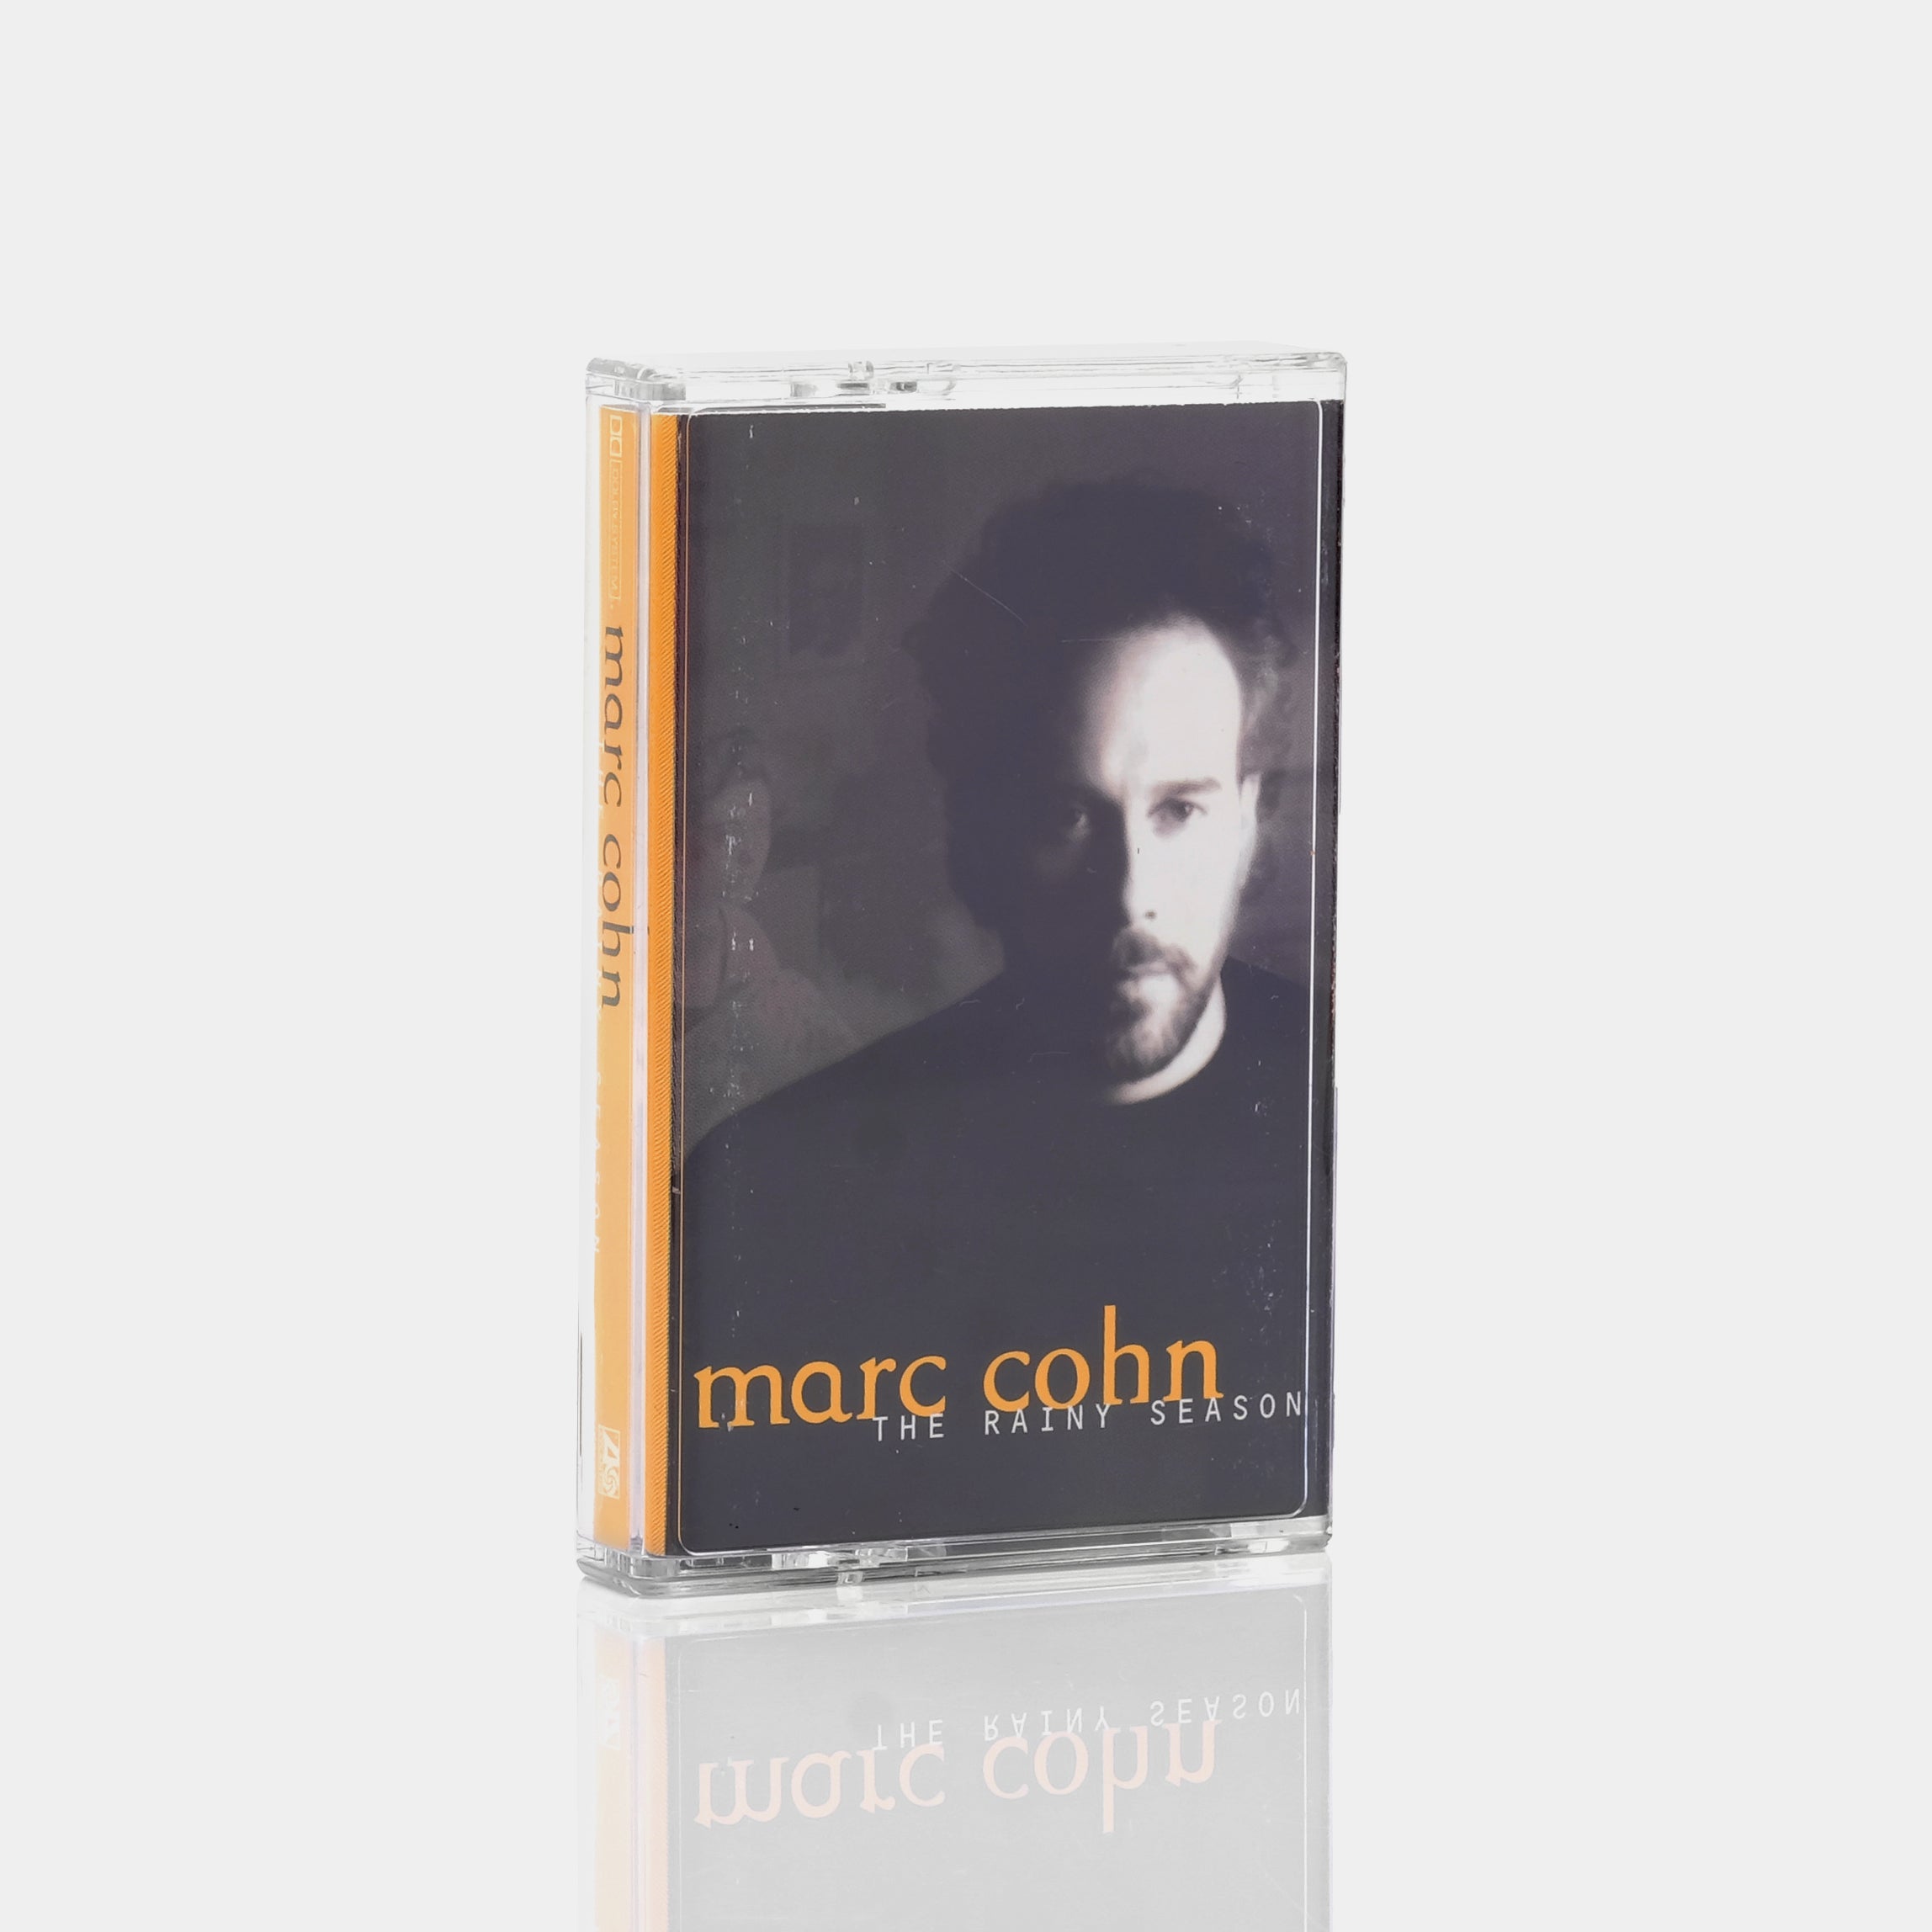 Marc Cohn - The Rainy Season Cassette Tape